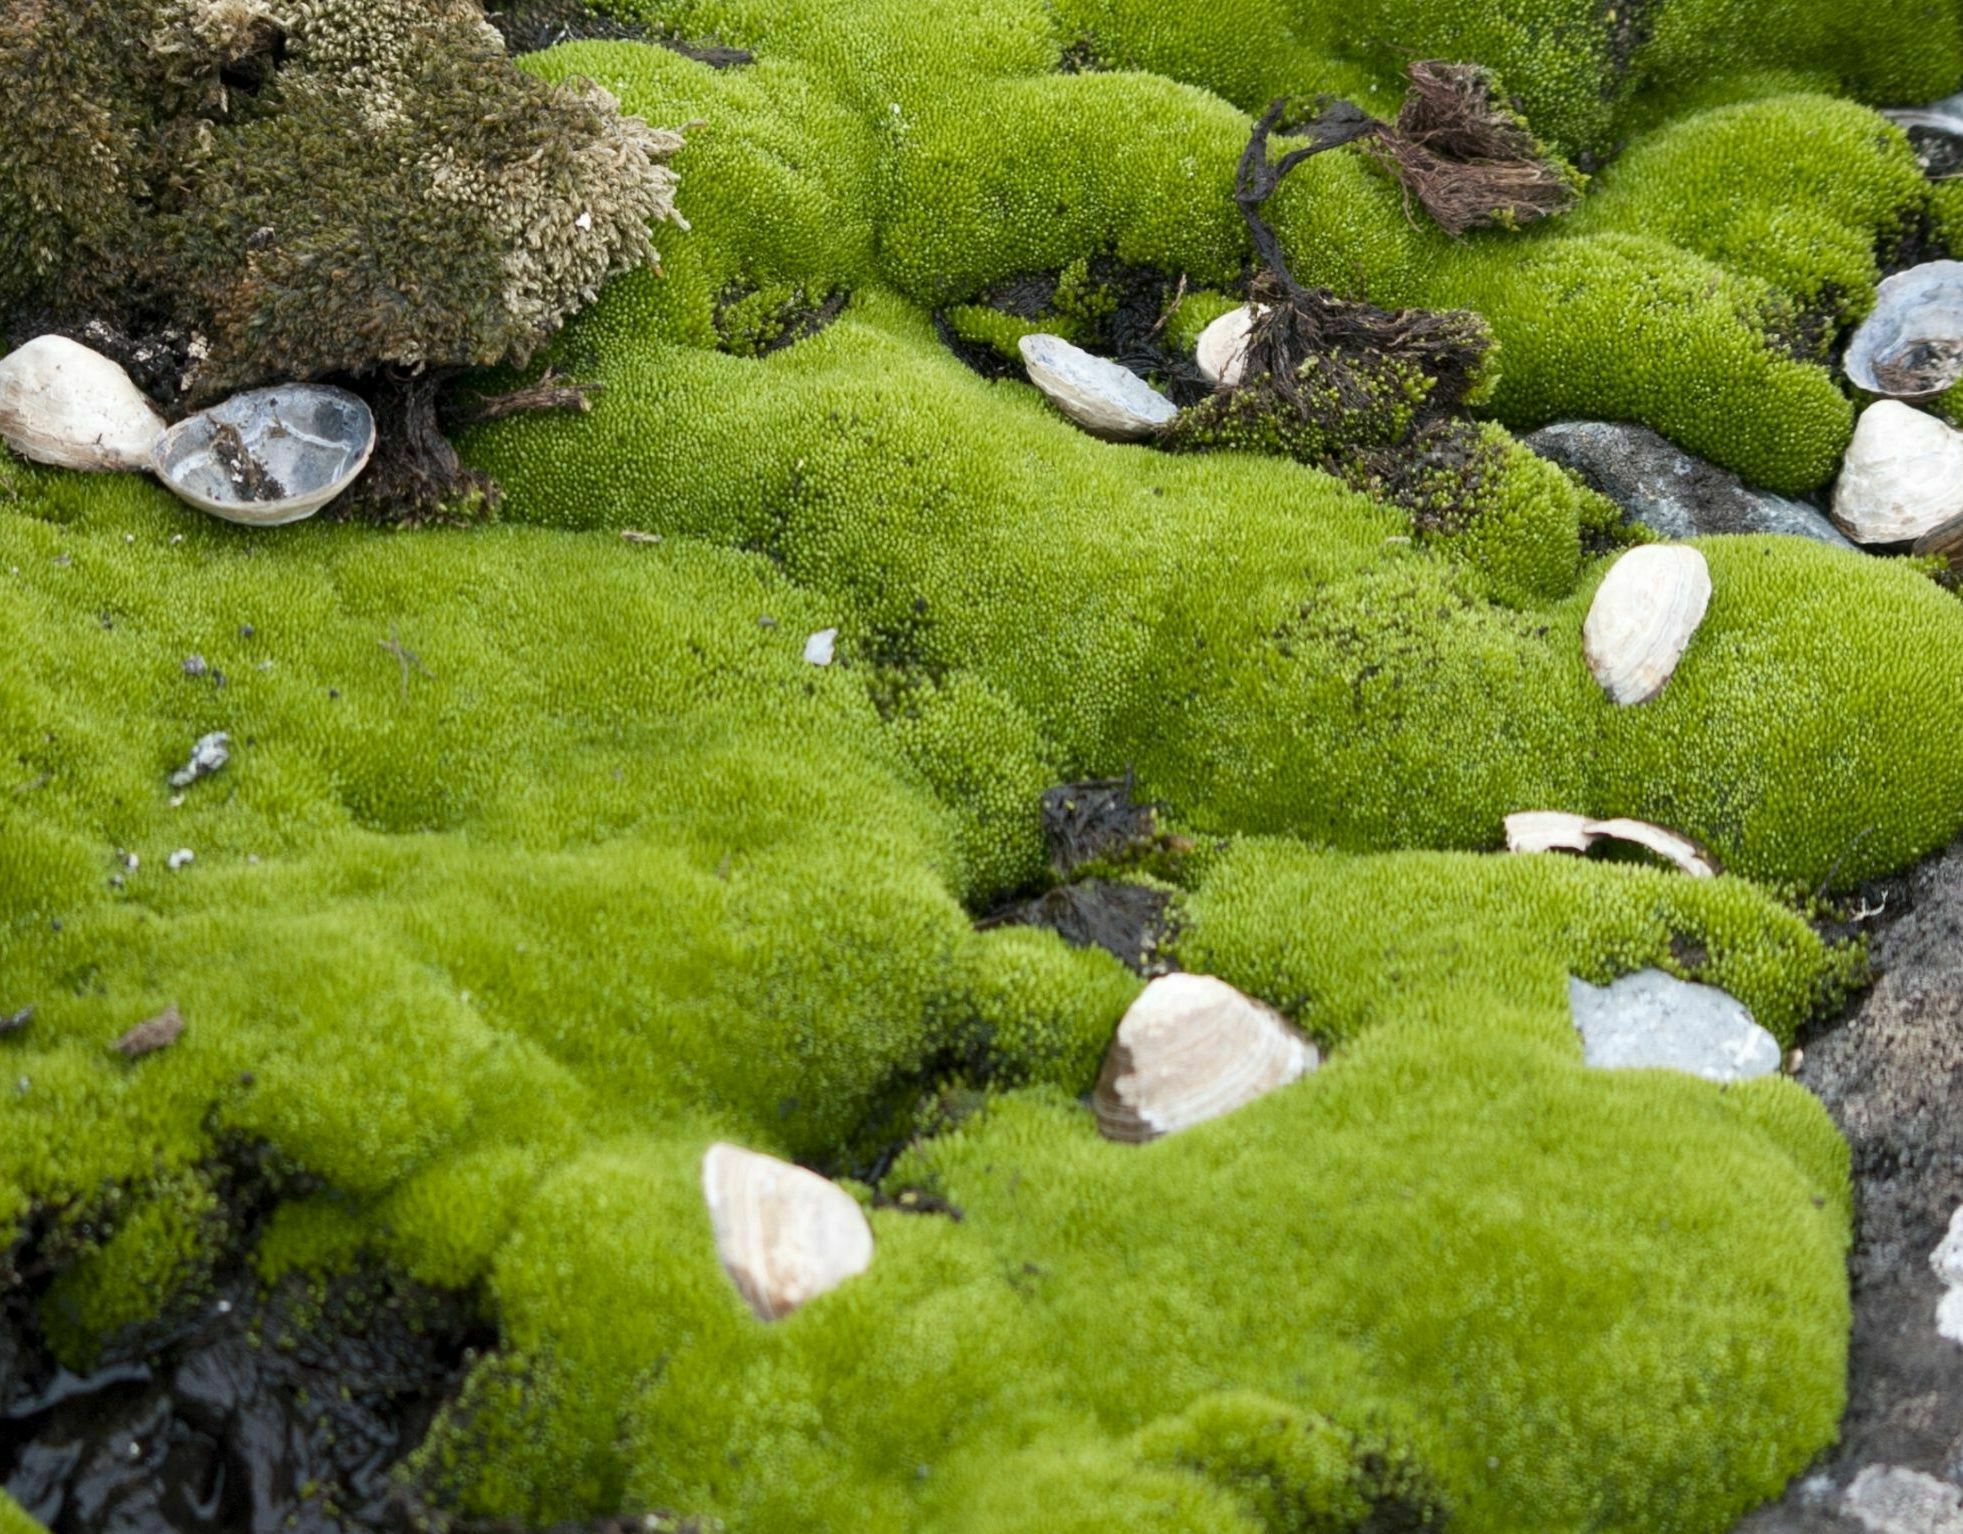 Antarctic moss bed